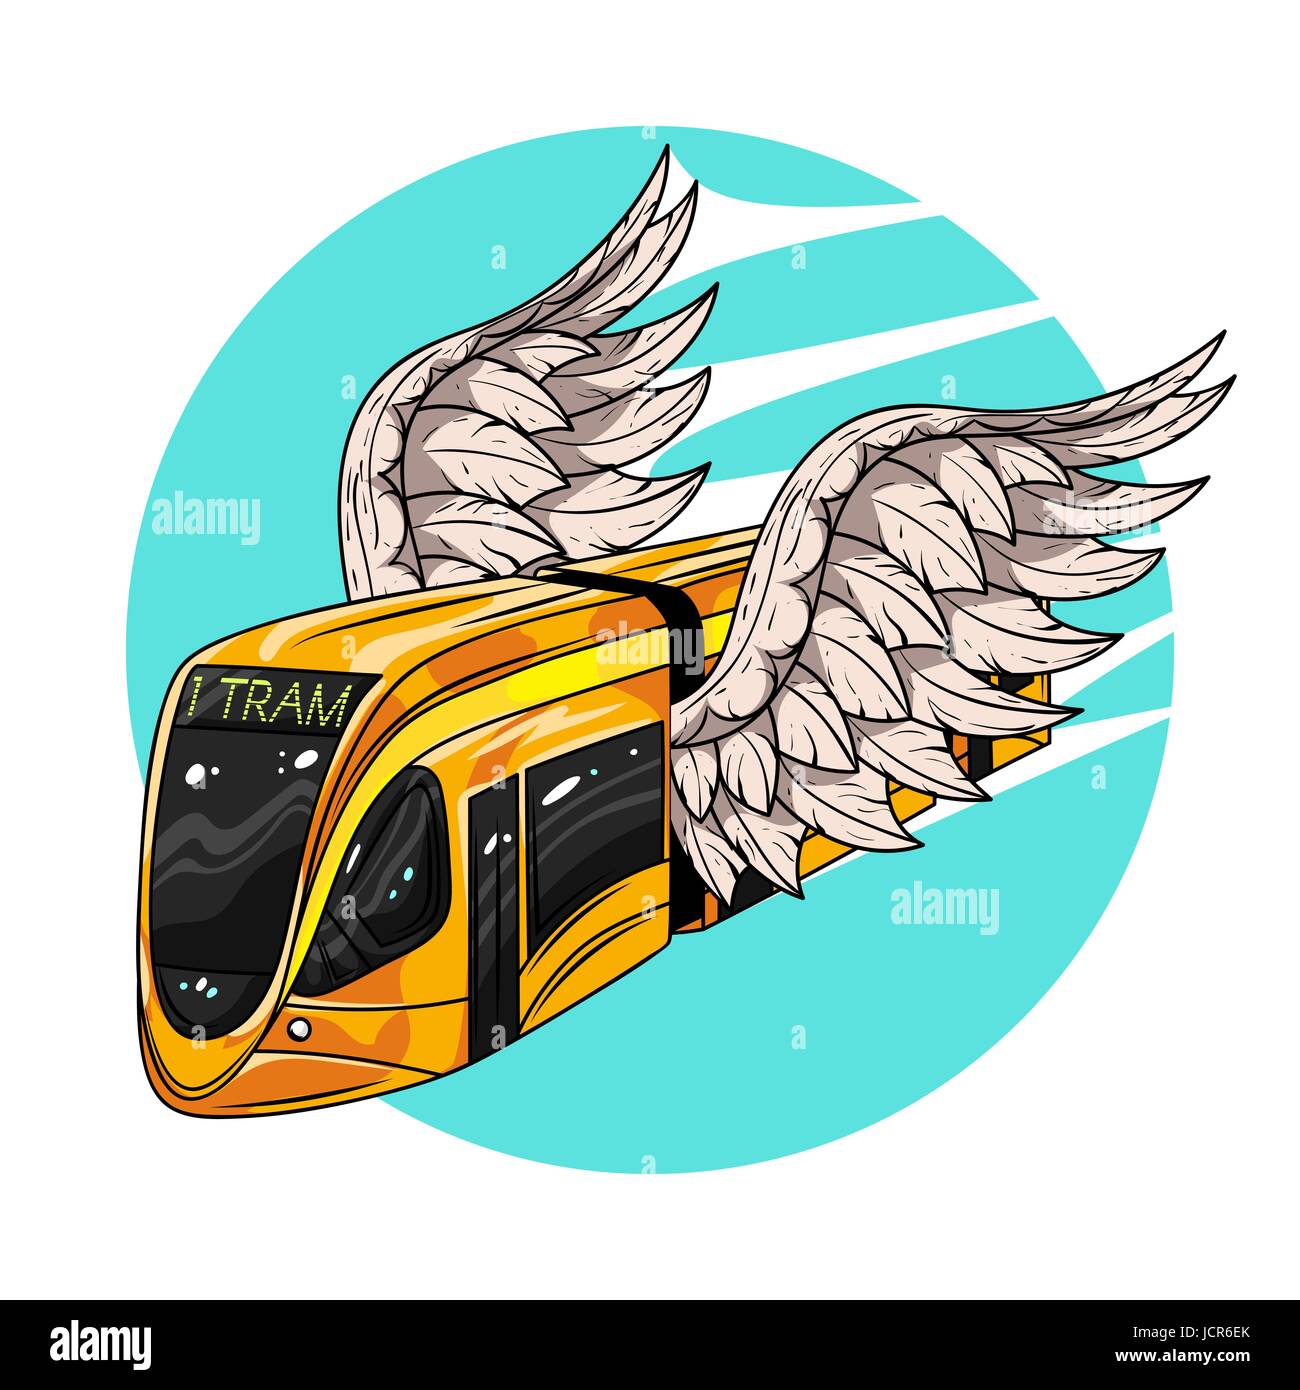 Vektor hand gezeichnete Darstellung der modernen Straßenbahnwagen mit Flügeln. Konzept der schnellen Transport. Illustration für print, Web. Stock Vektor